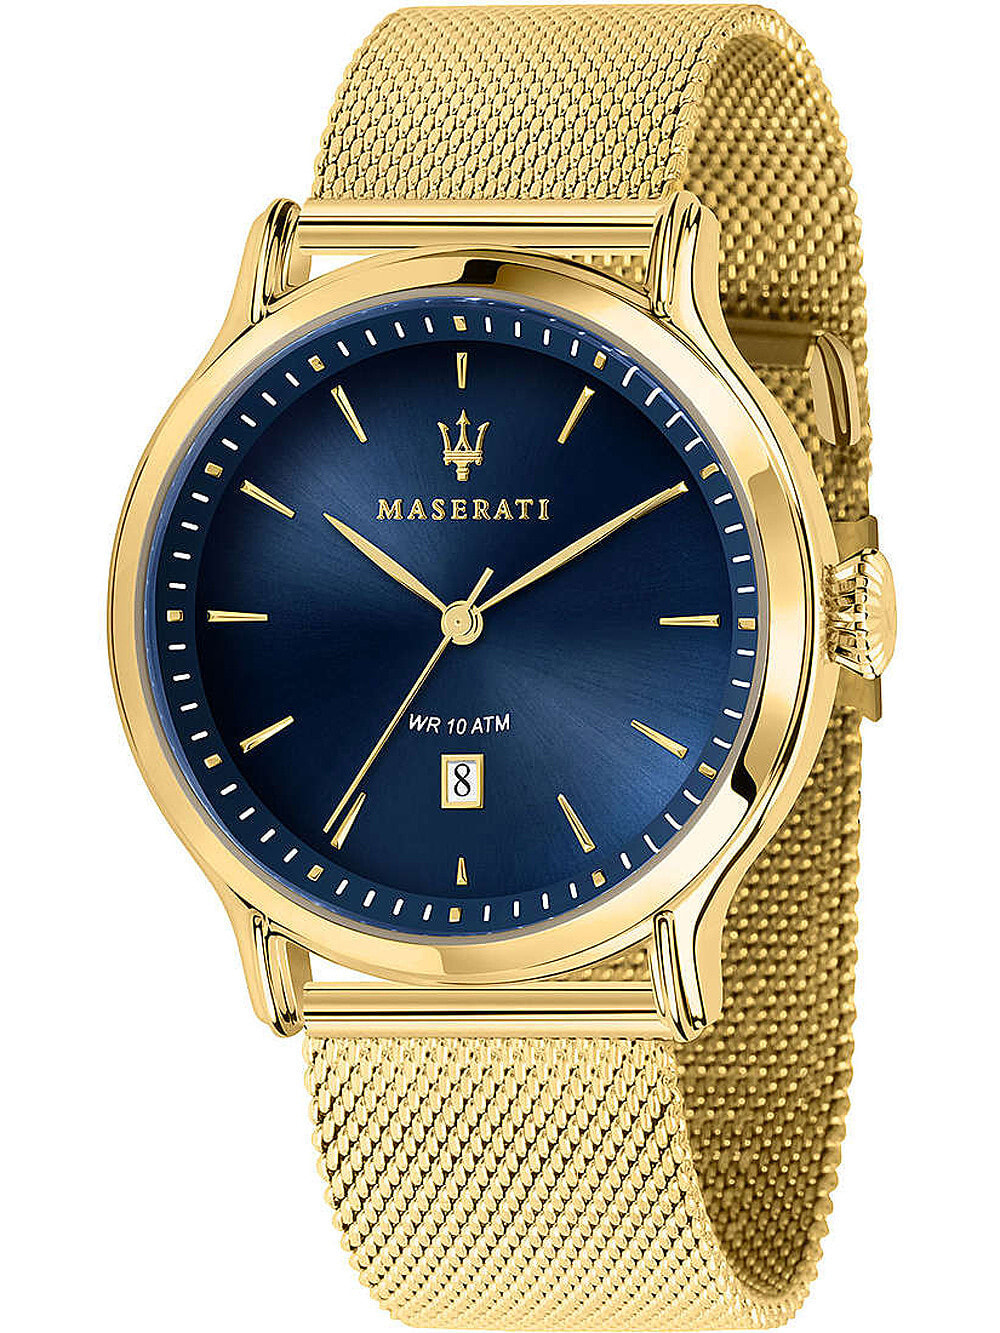 Мужские наручные часы с золотым браслетом Maserati R8853118014 Epoca mens 42mm 10ATM